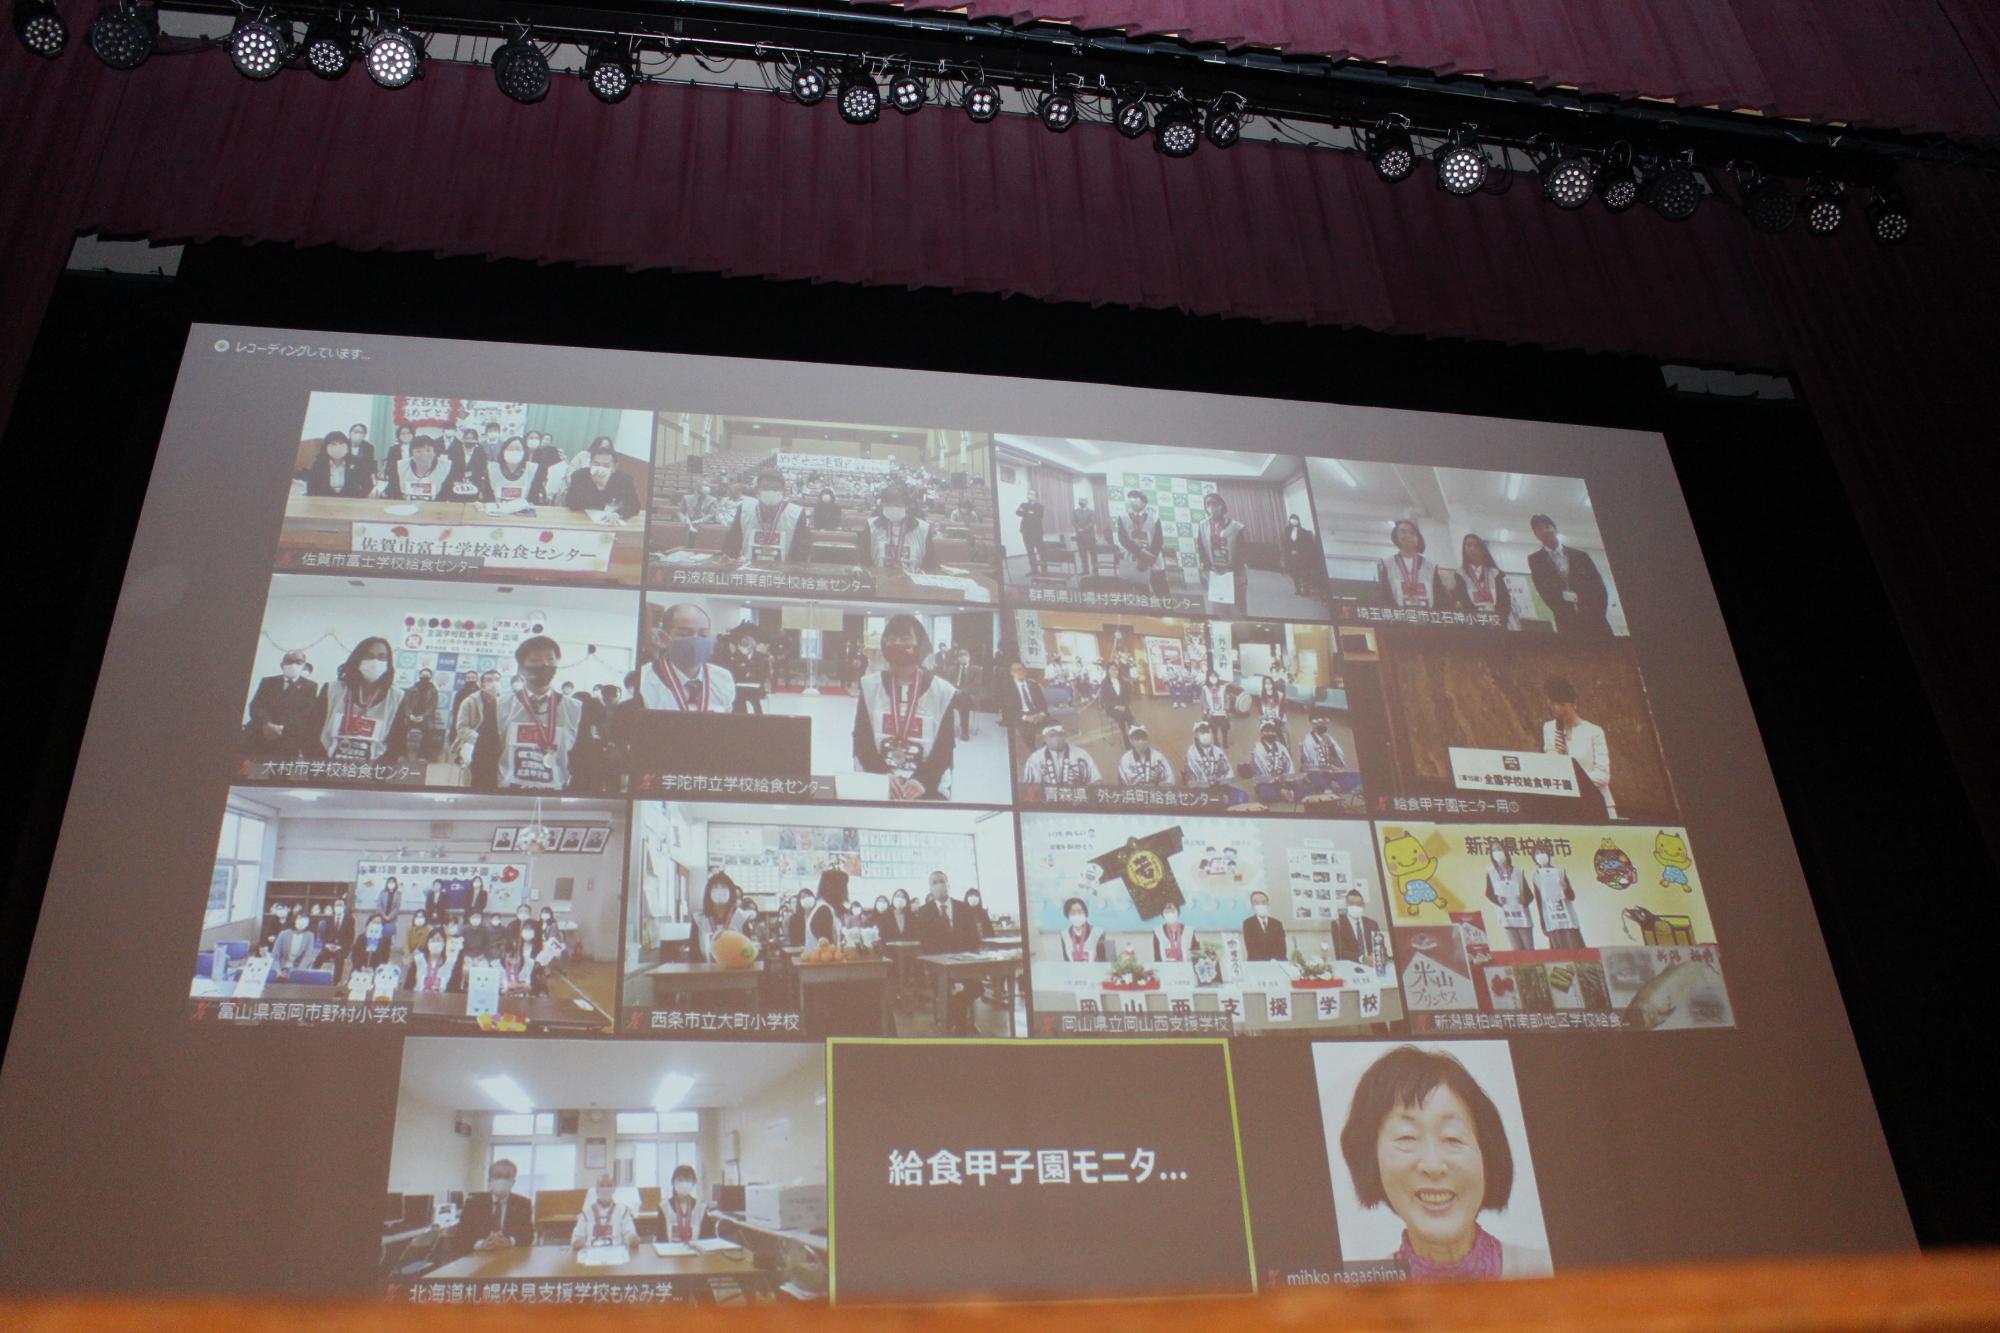 スクリーンに、各代表チームの映像が映し出されている